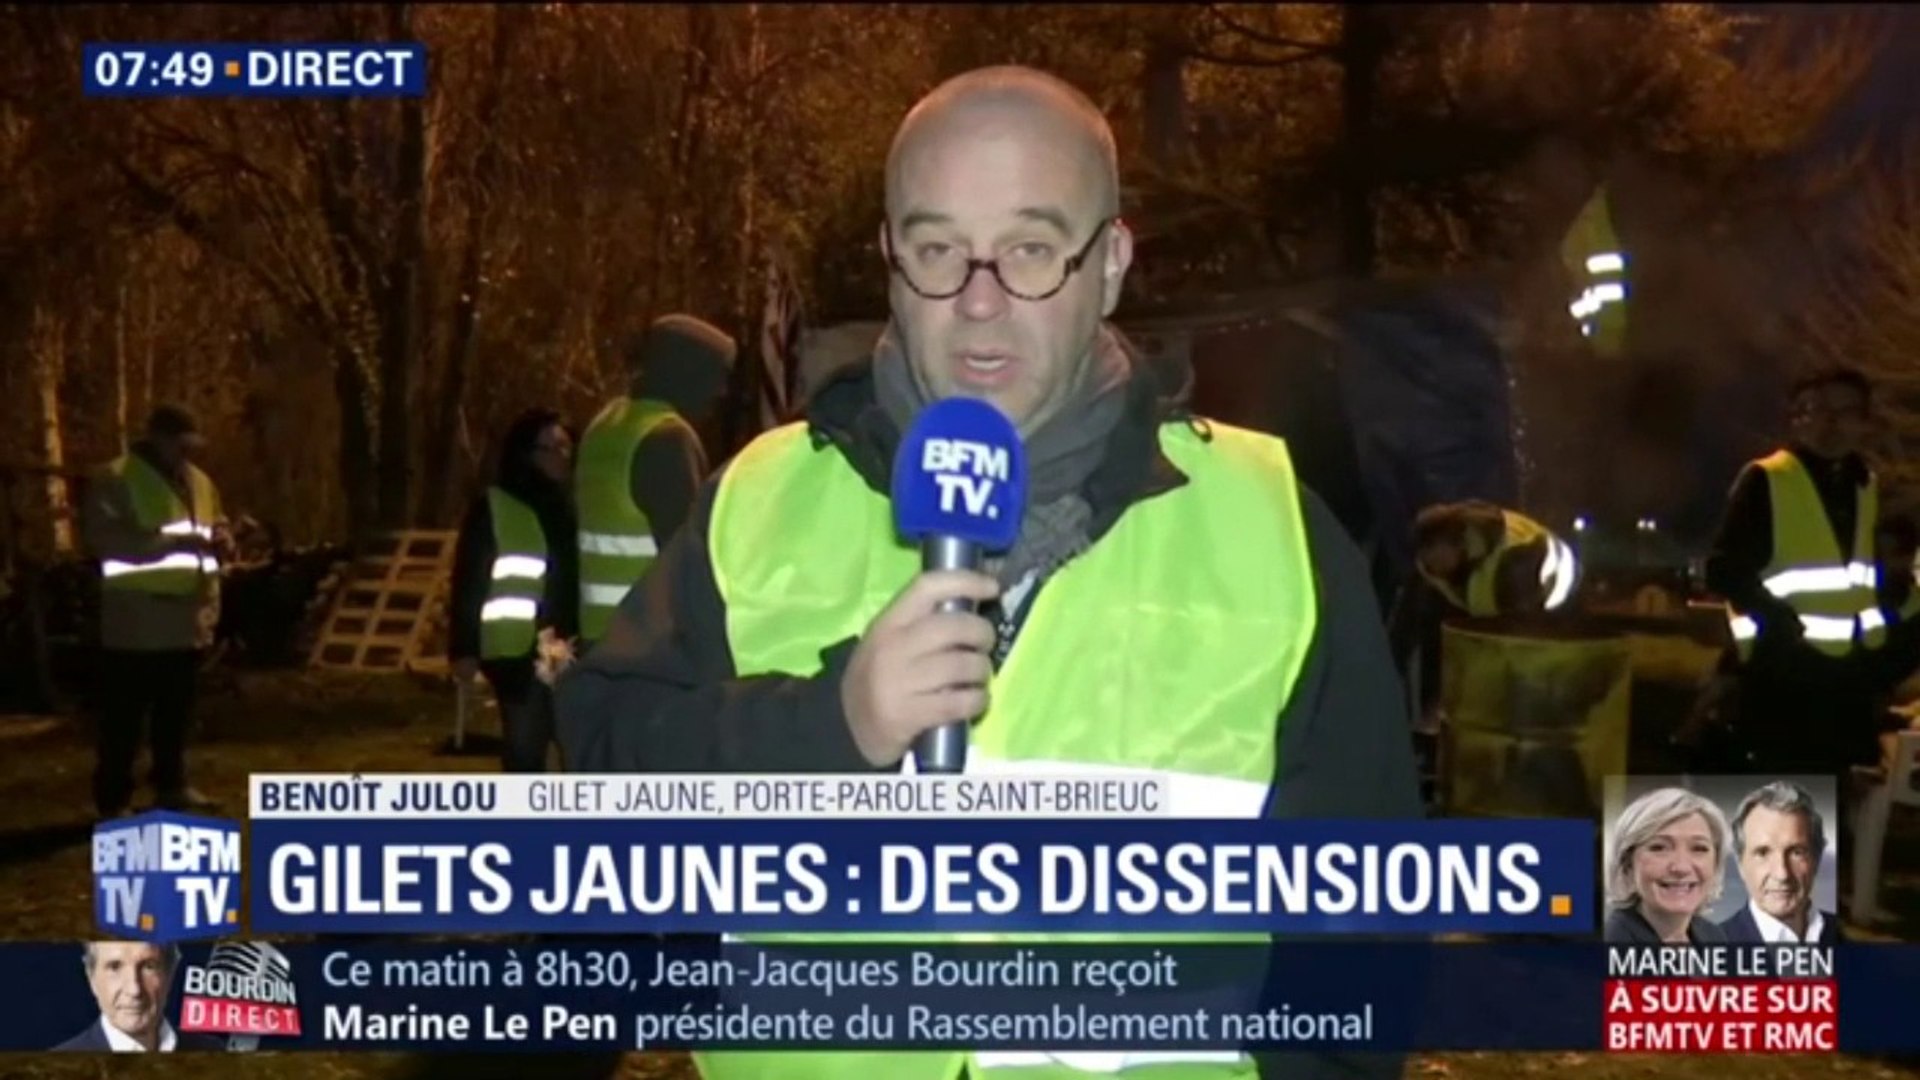 Benoît Julou, gilet jaune: "il existe des dissensions mais on veut tous  aller dans le même sens" - Vidéo Dailymotion